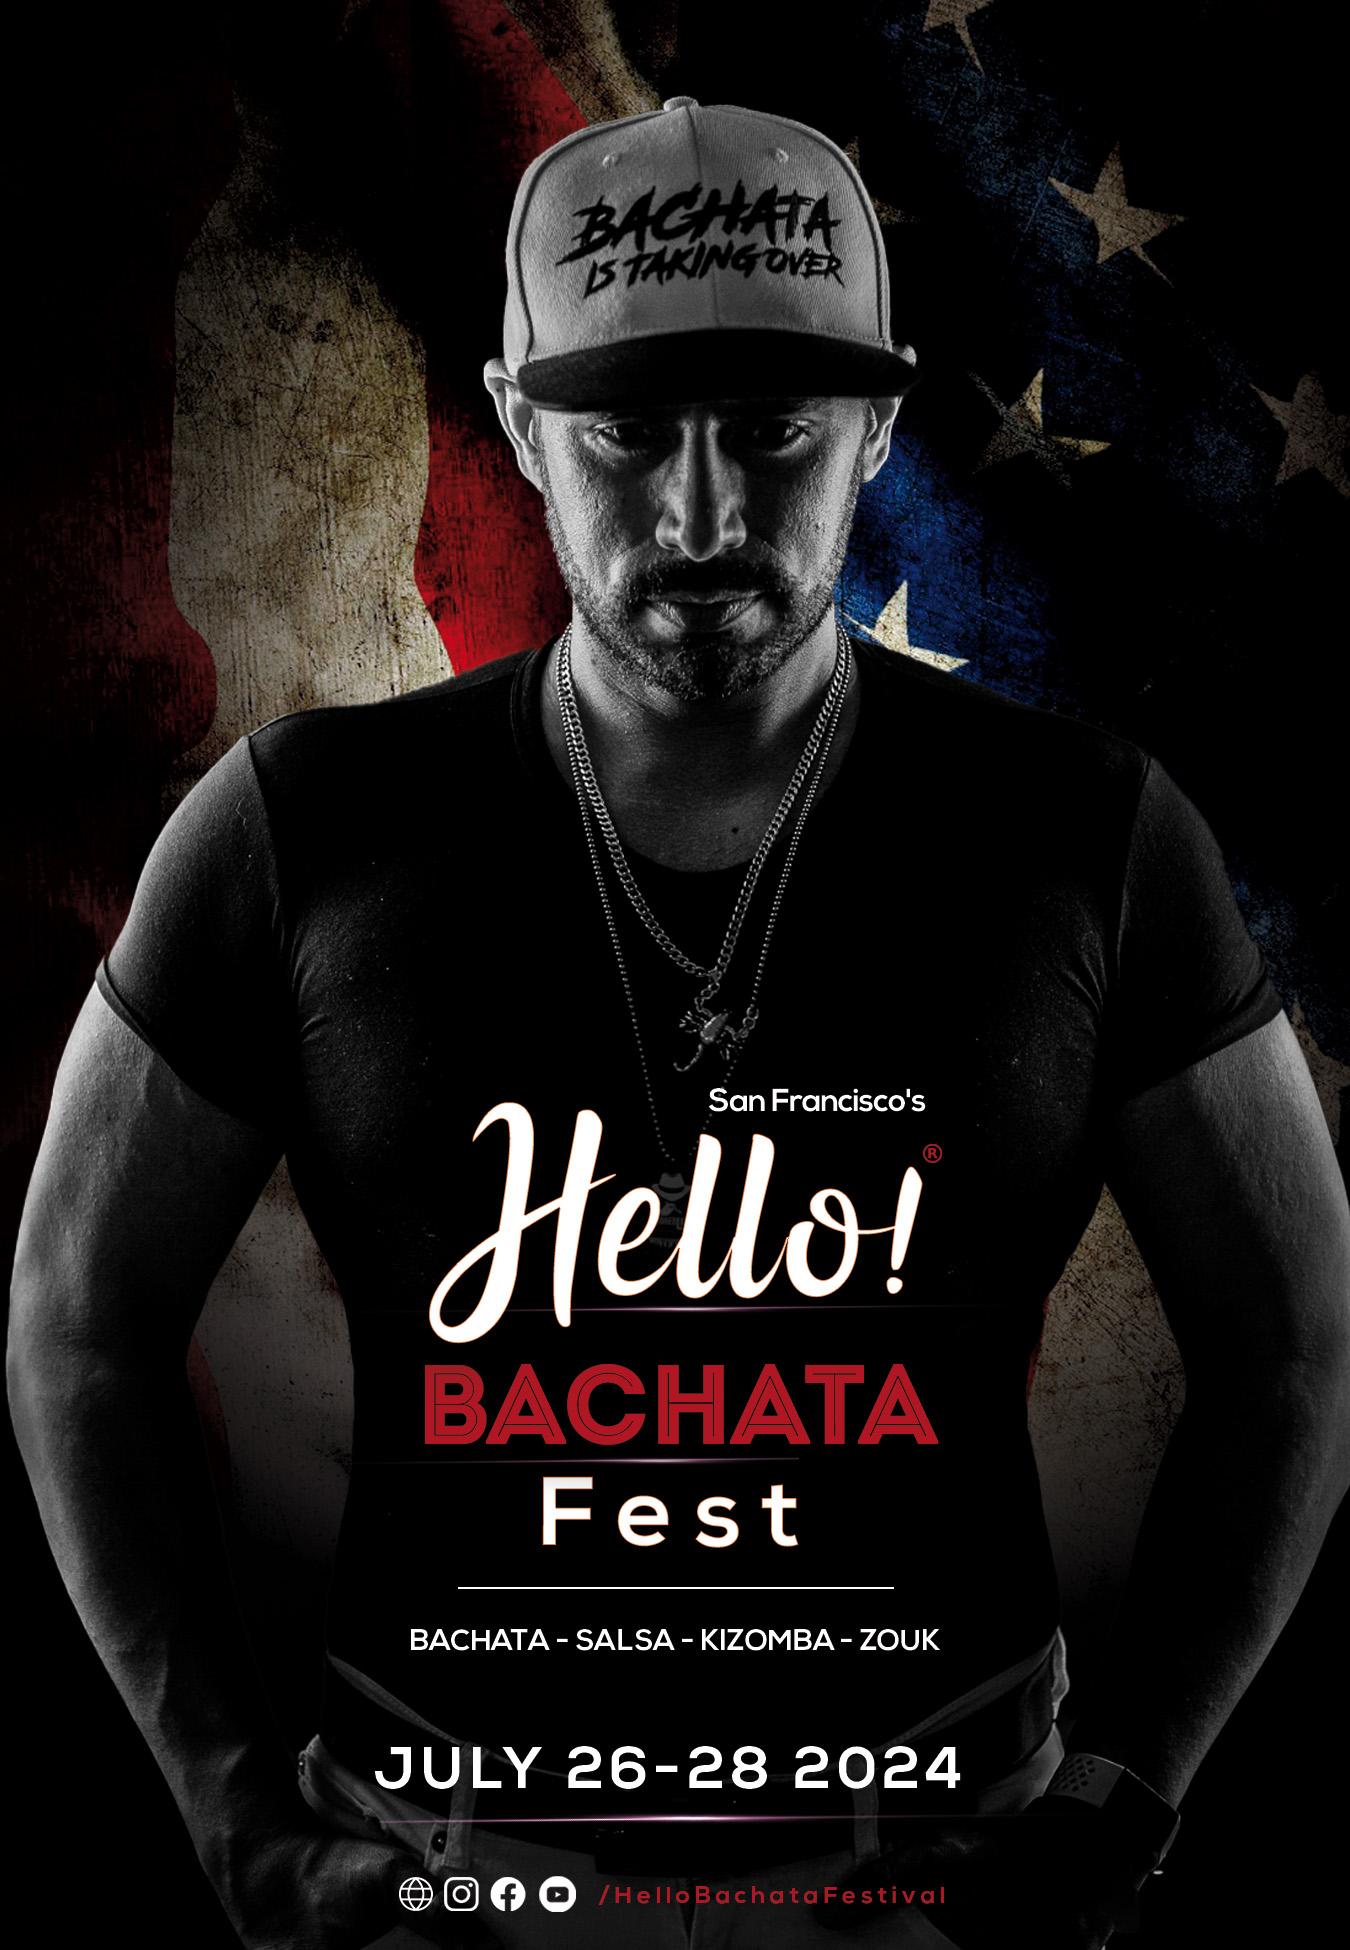 Hello Bachata Fest - The Don - Bachata